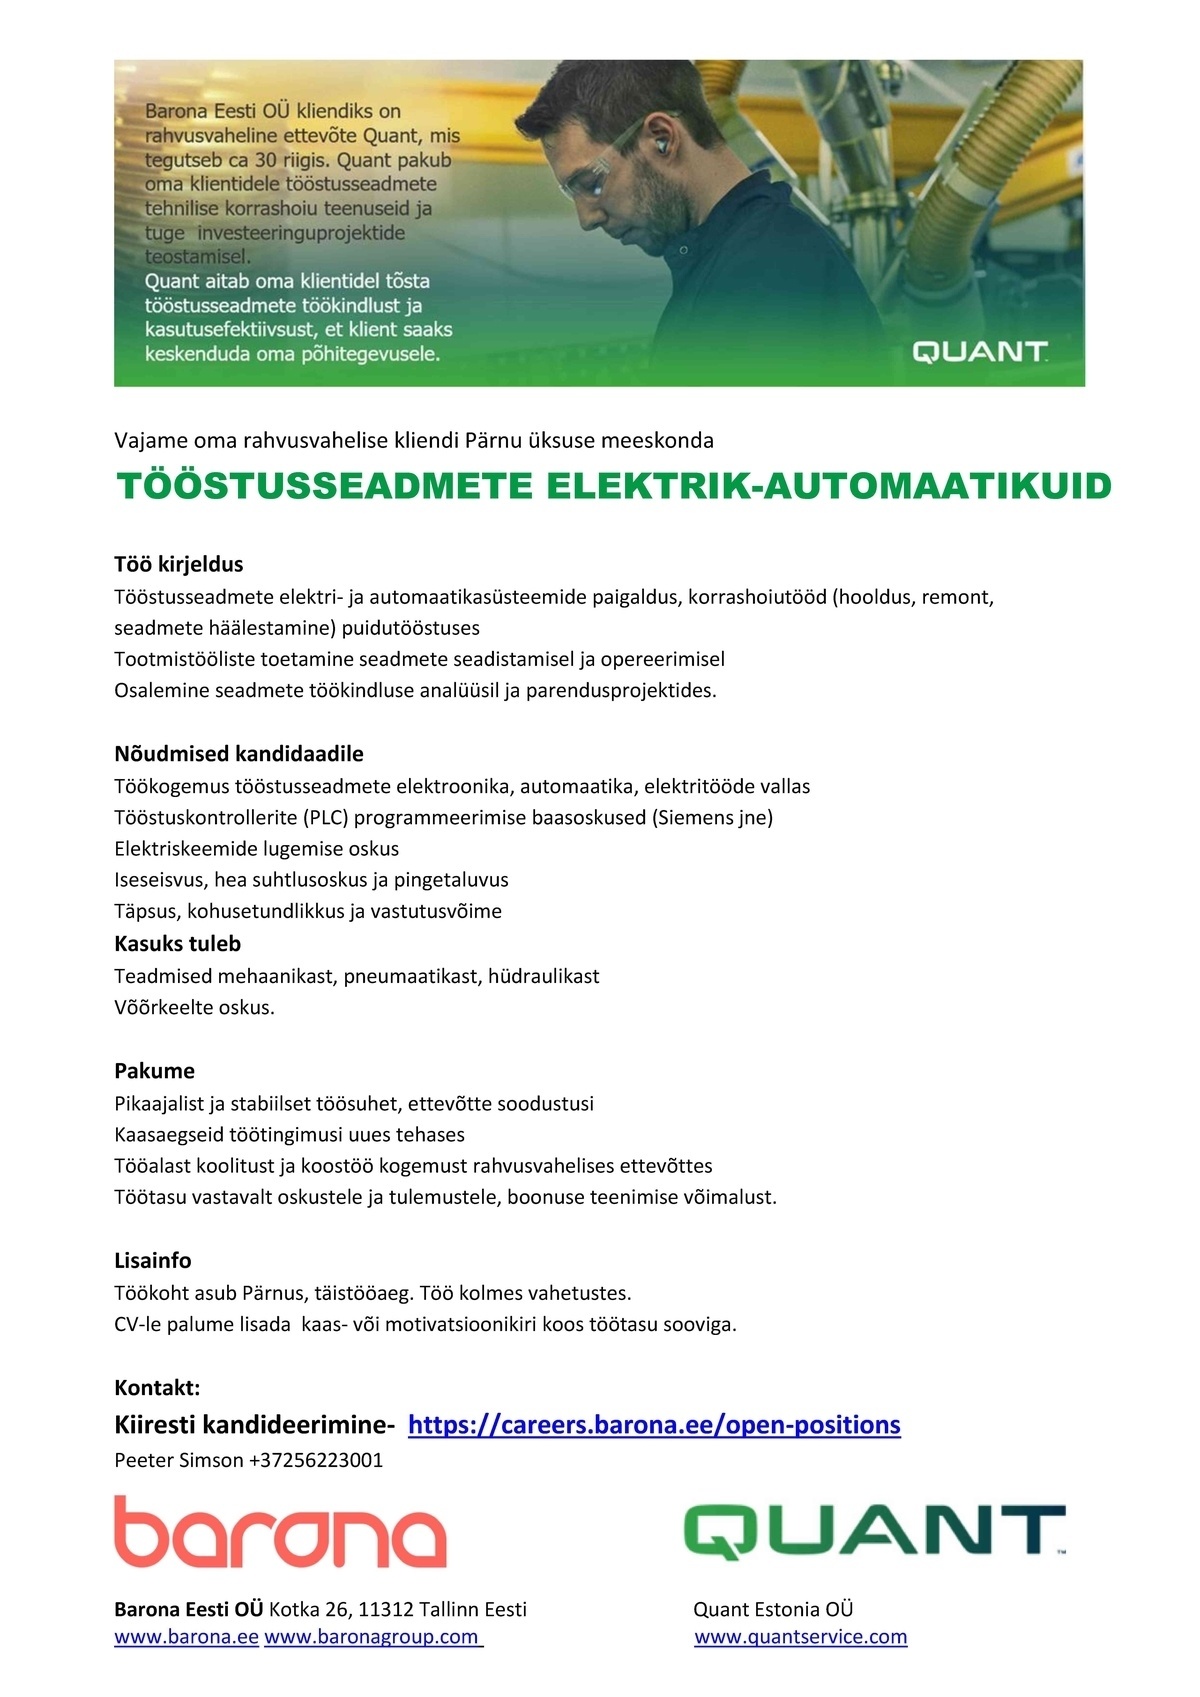 Barona Eesti OÜ Kohe elektrik/automaatikuid (PLC kontrollerite seadistus oskusega) Pärnusse